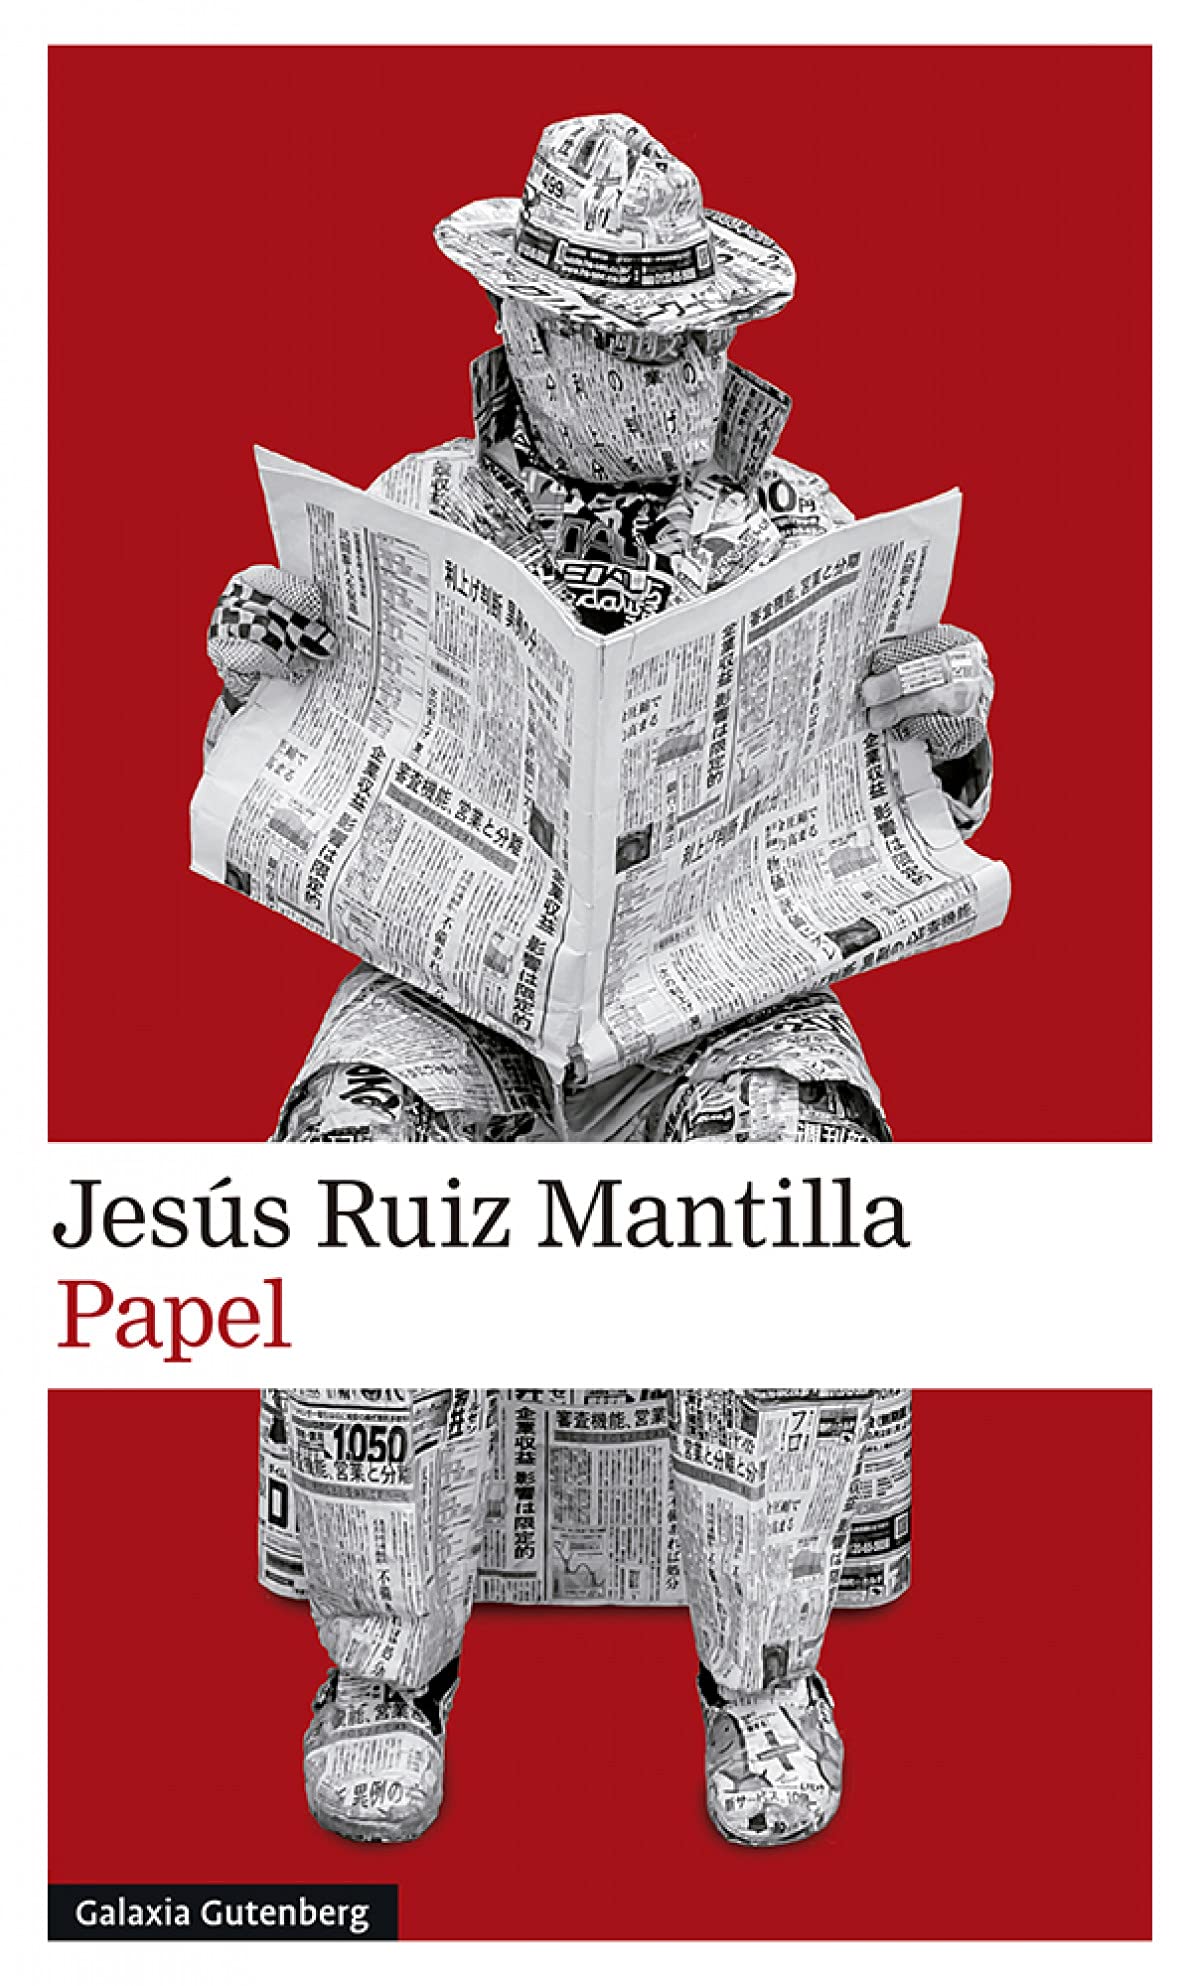 Papel, de Jesús Ruiz Mantilla